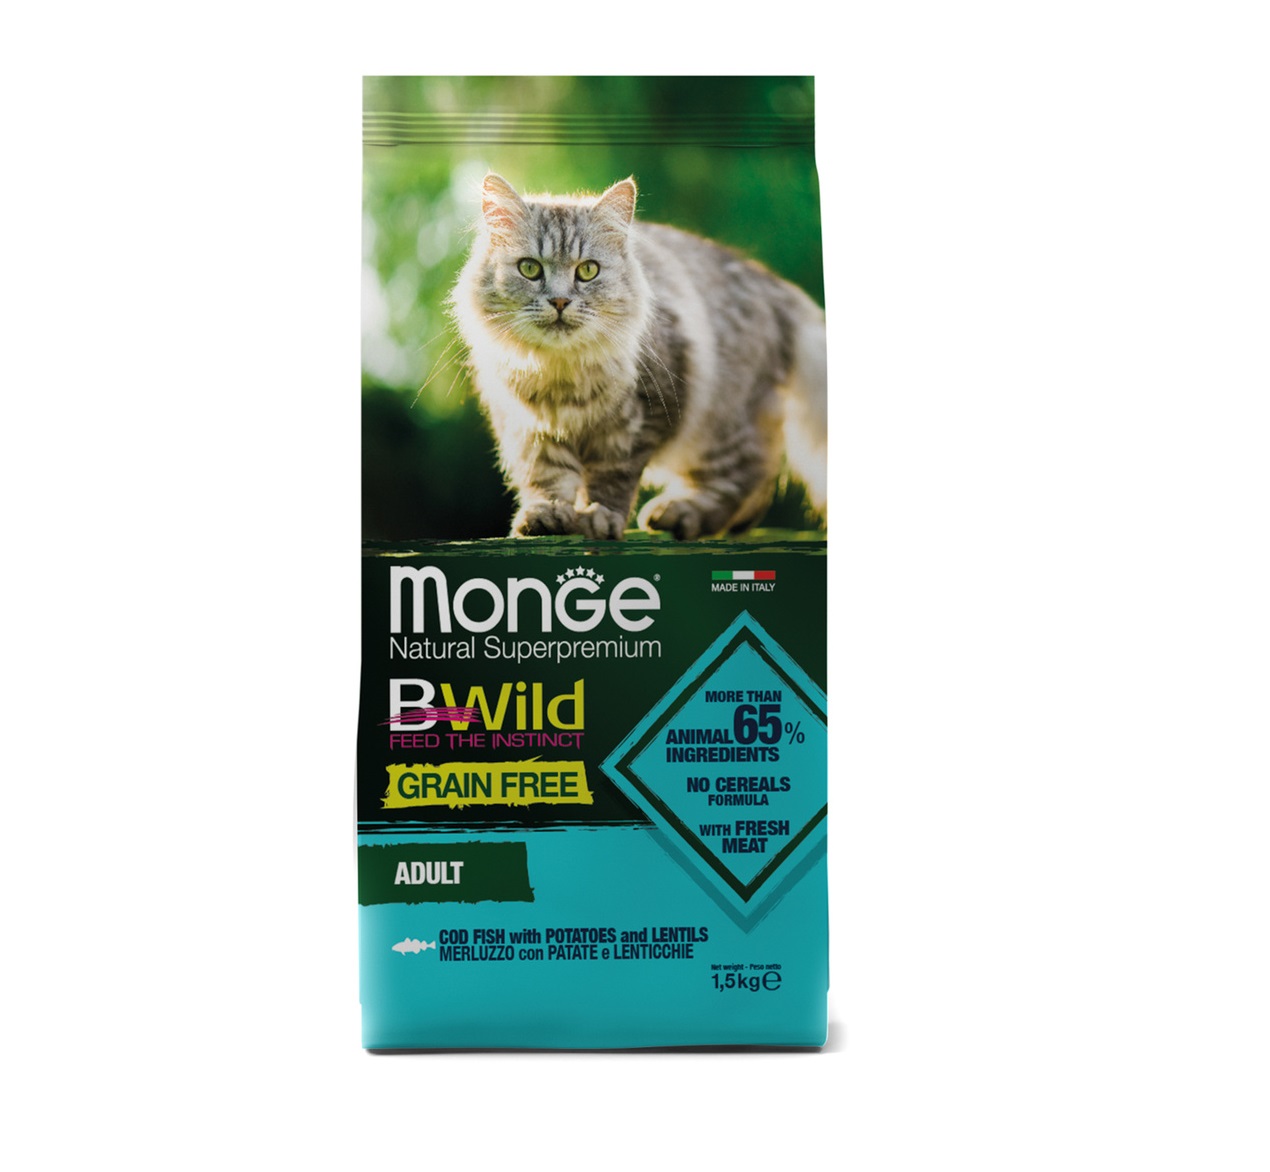 Монж 1,5кг - BWild - Треска, БЕЗзерновой корм для кошек (Monge BWild Grain Free)